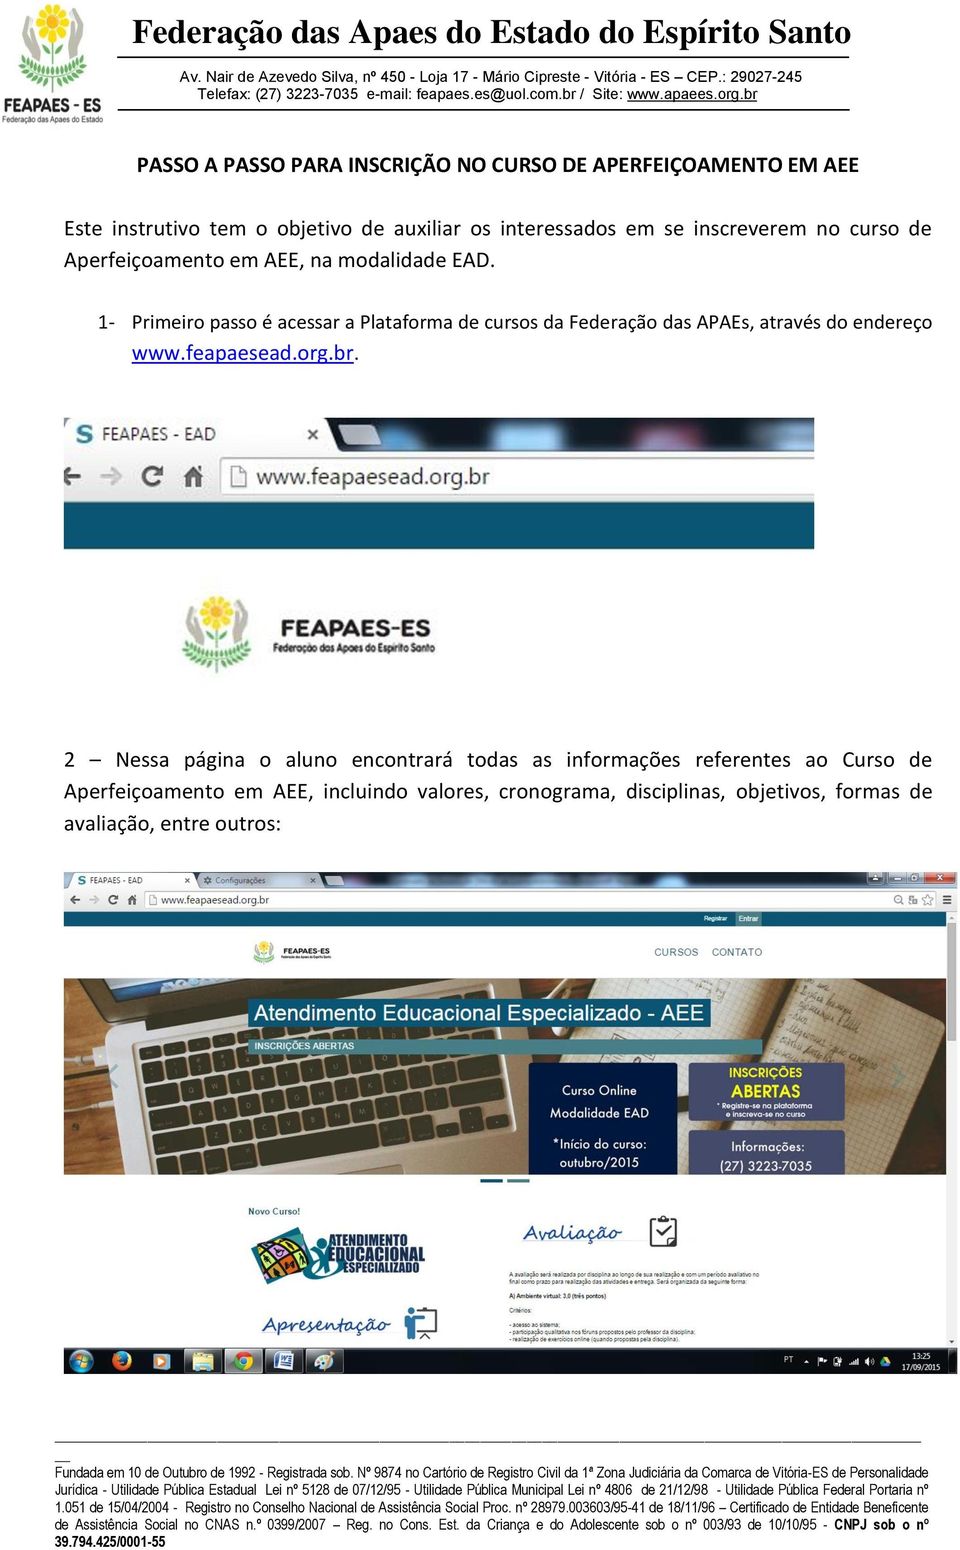 1- Primeiro passo é acessar a Plataforma de cursos da Federação das APAEs, através do endereço www.feapaesead.org.br.